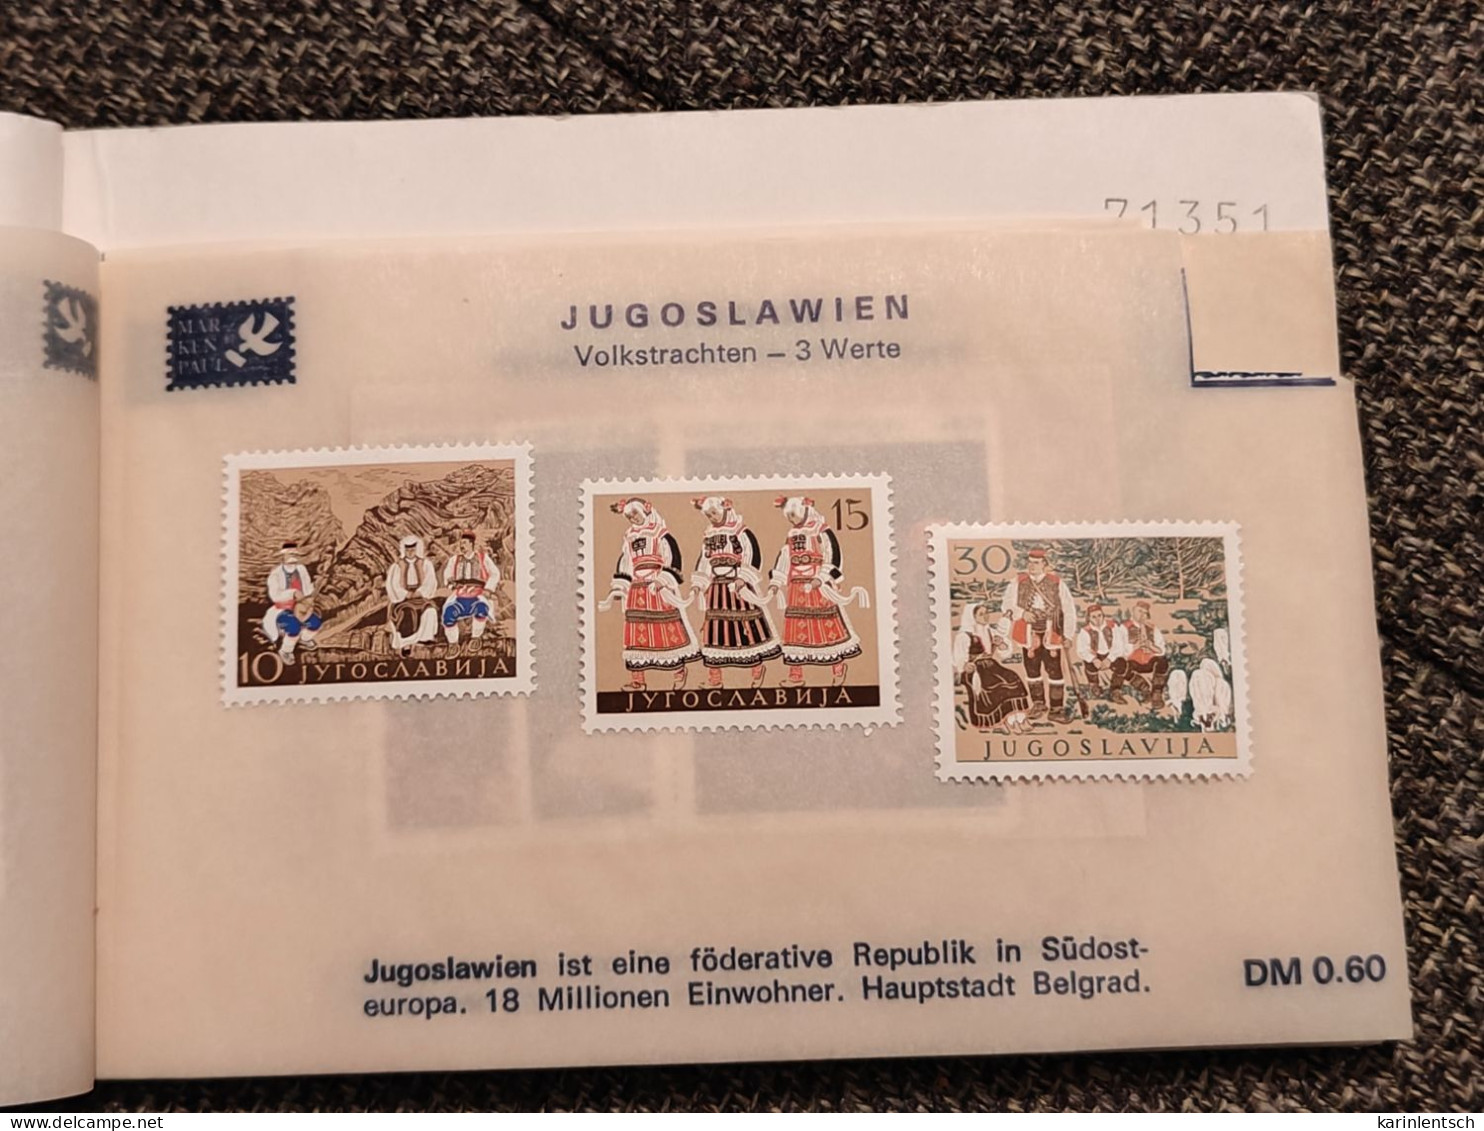 Auswahlhef mit Briefmarken aus aller Welt